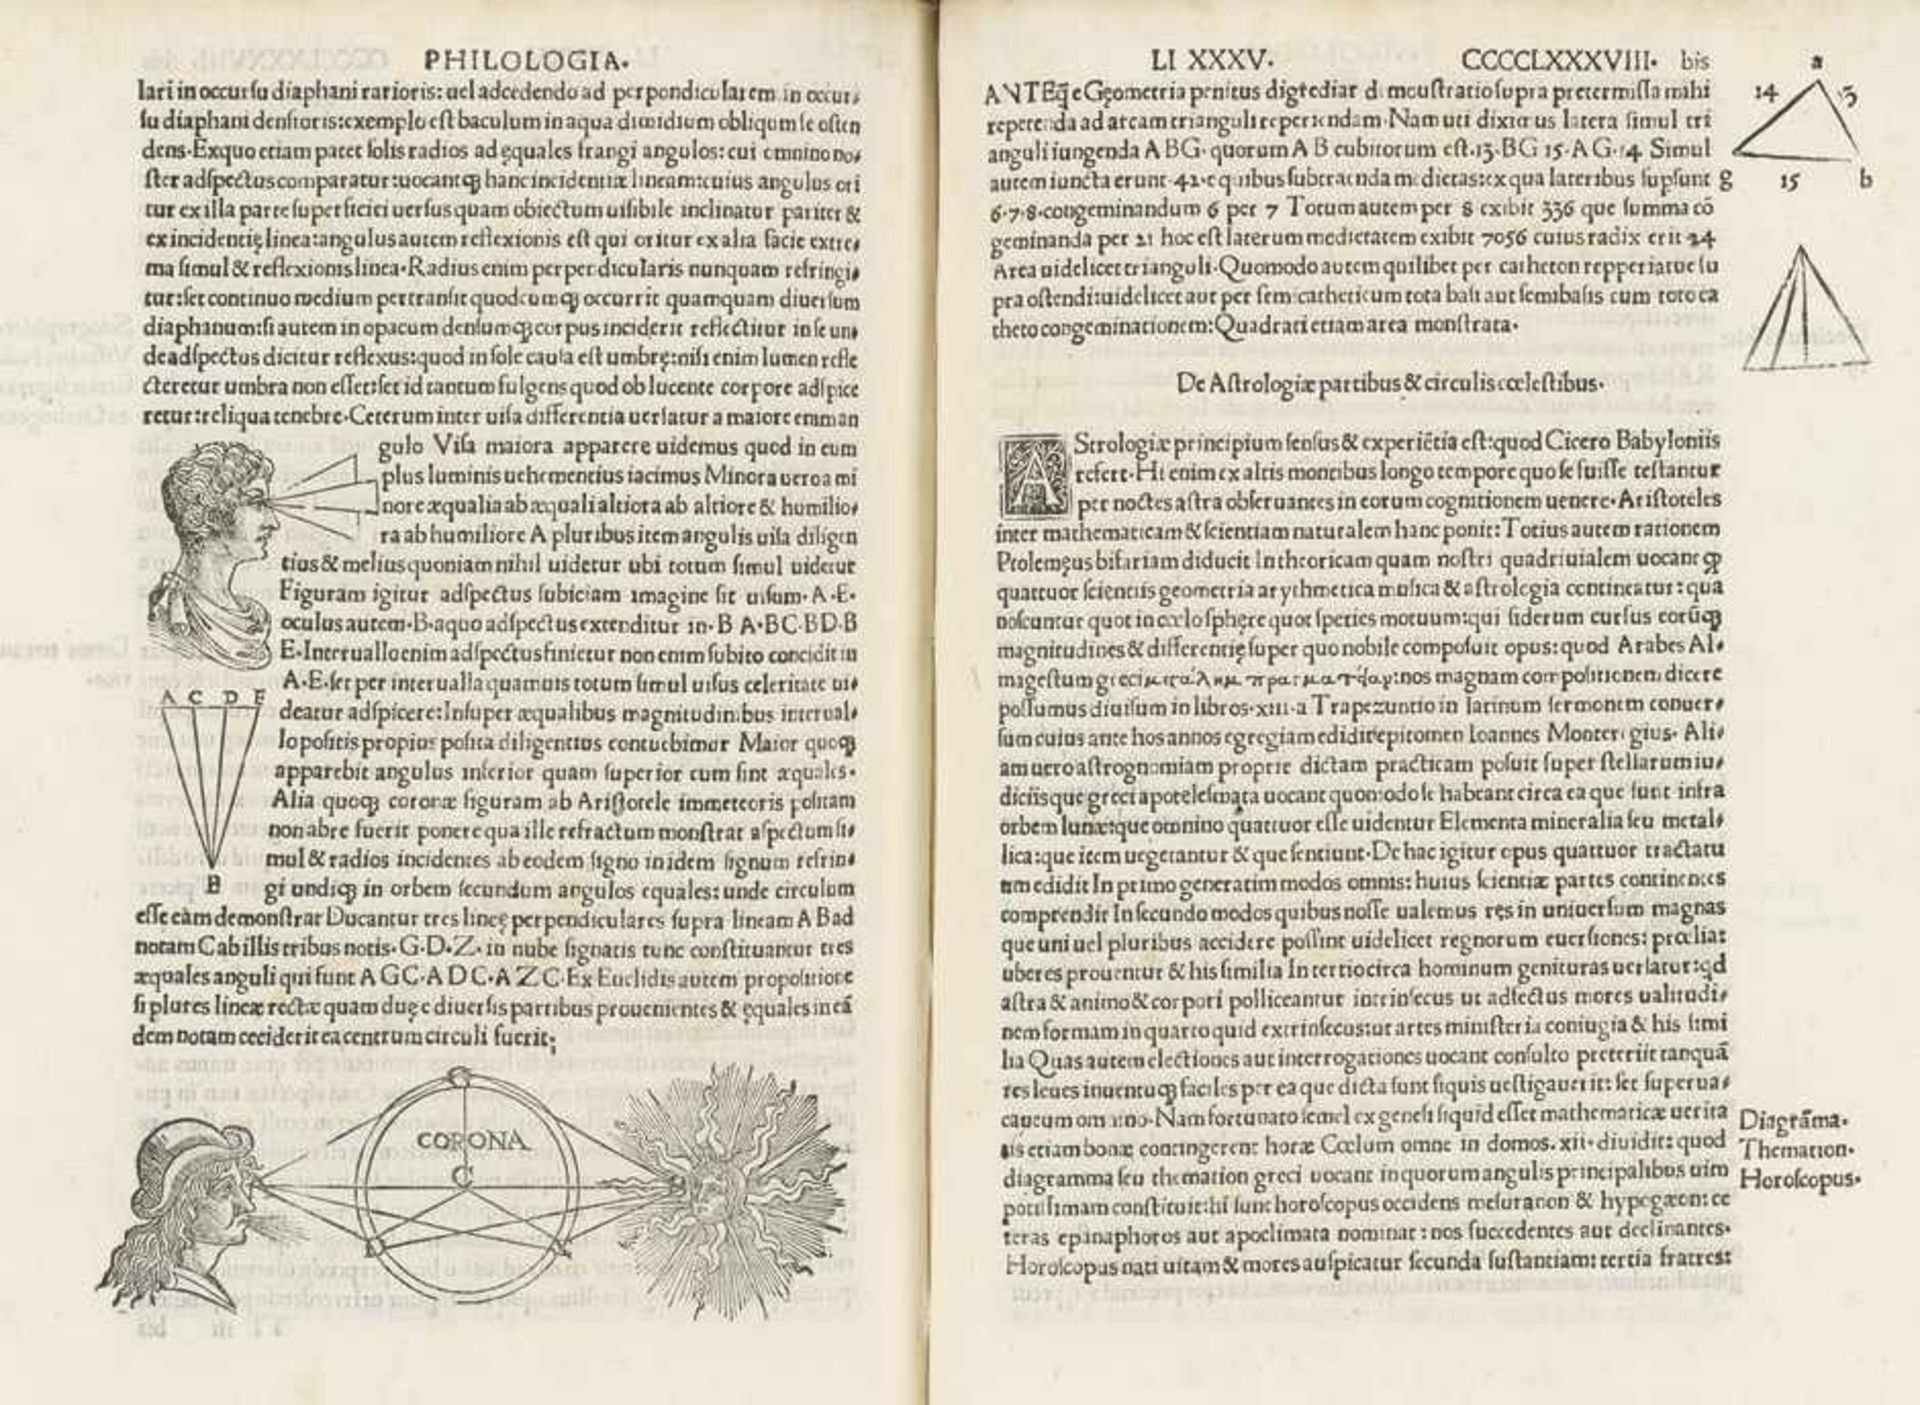 Maffei da Volterra, Raffello: Commentariorum urbanorum Raphaelis Volterrani - Image 4 of 4